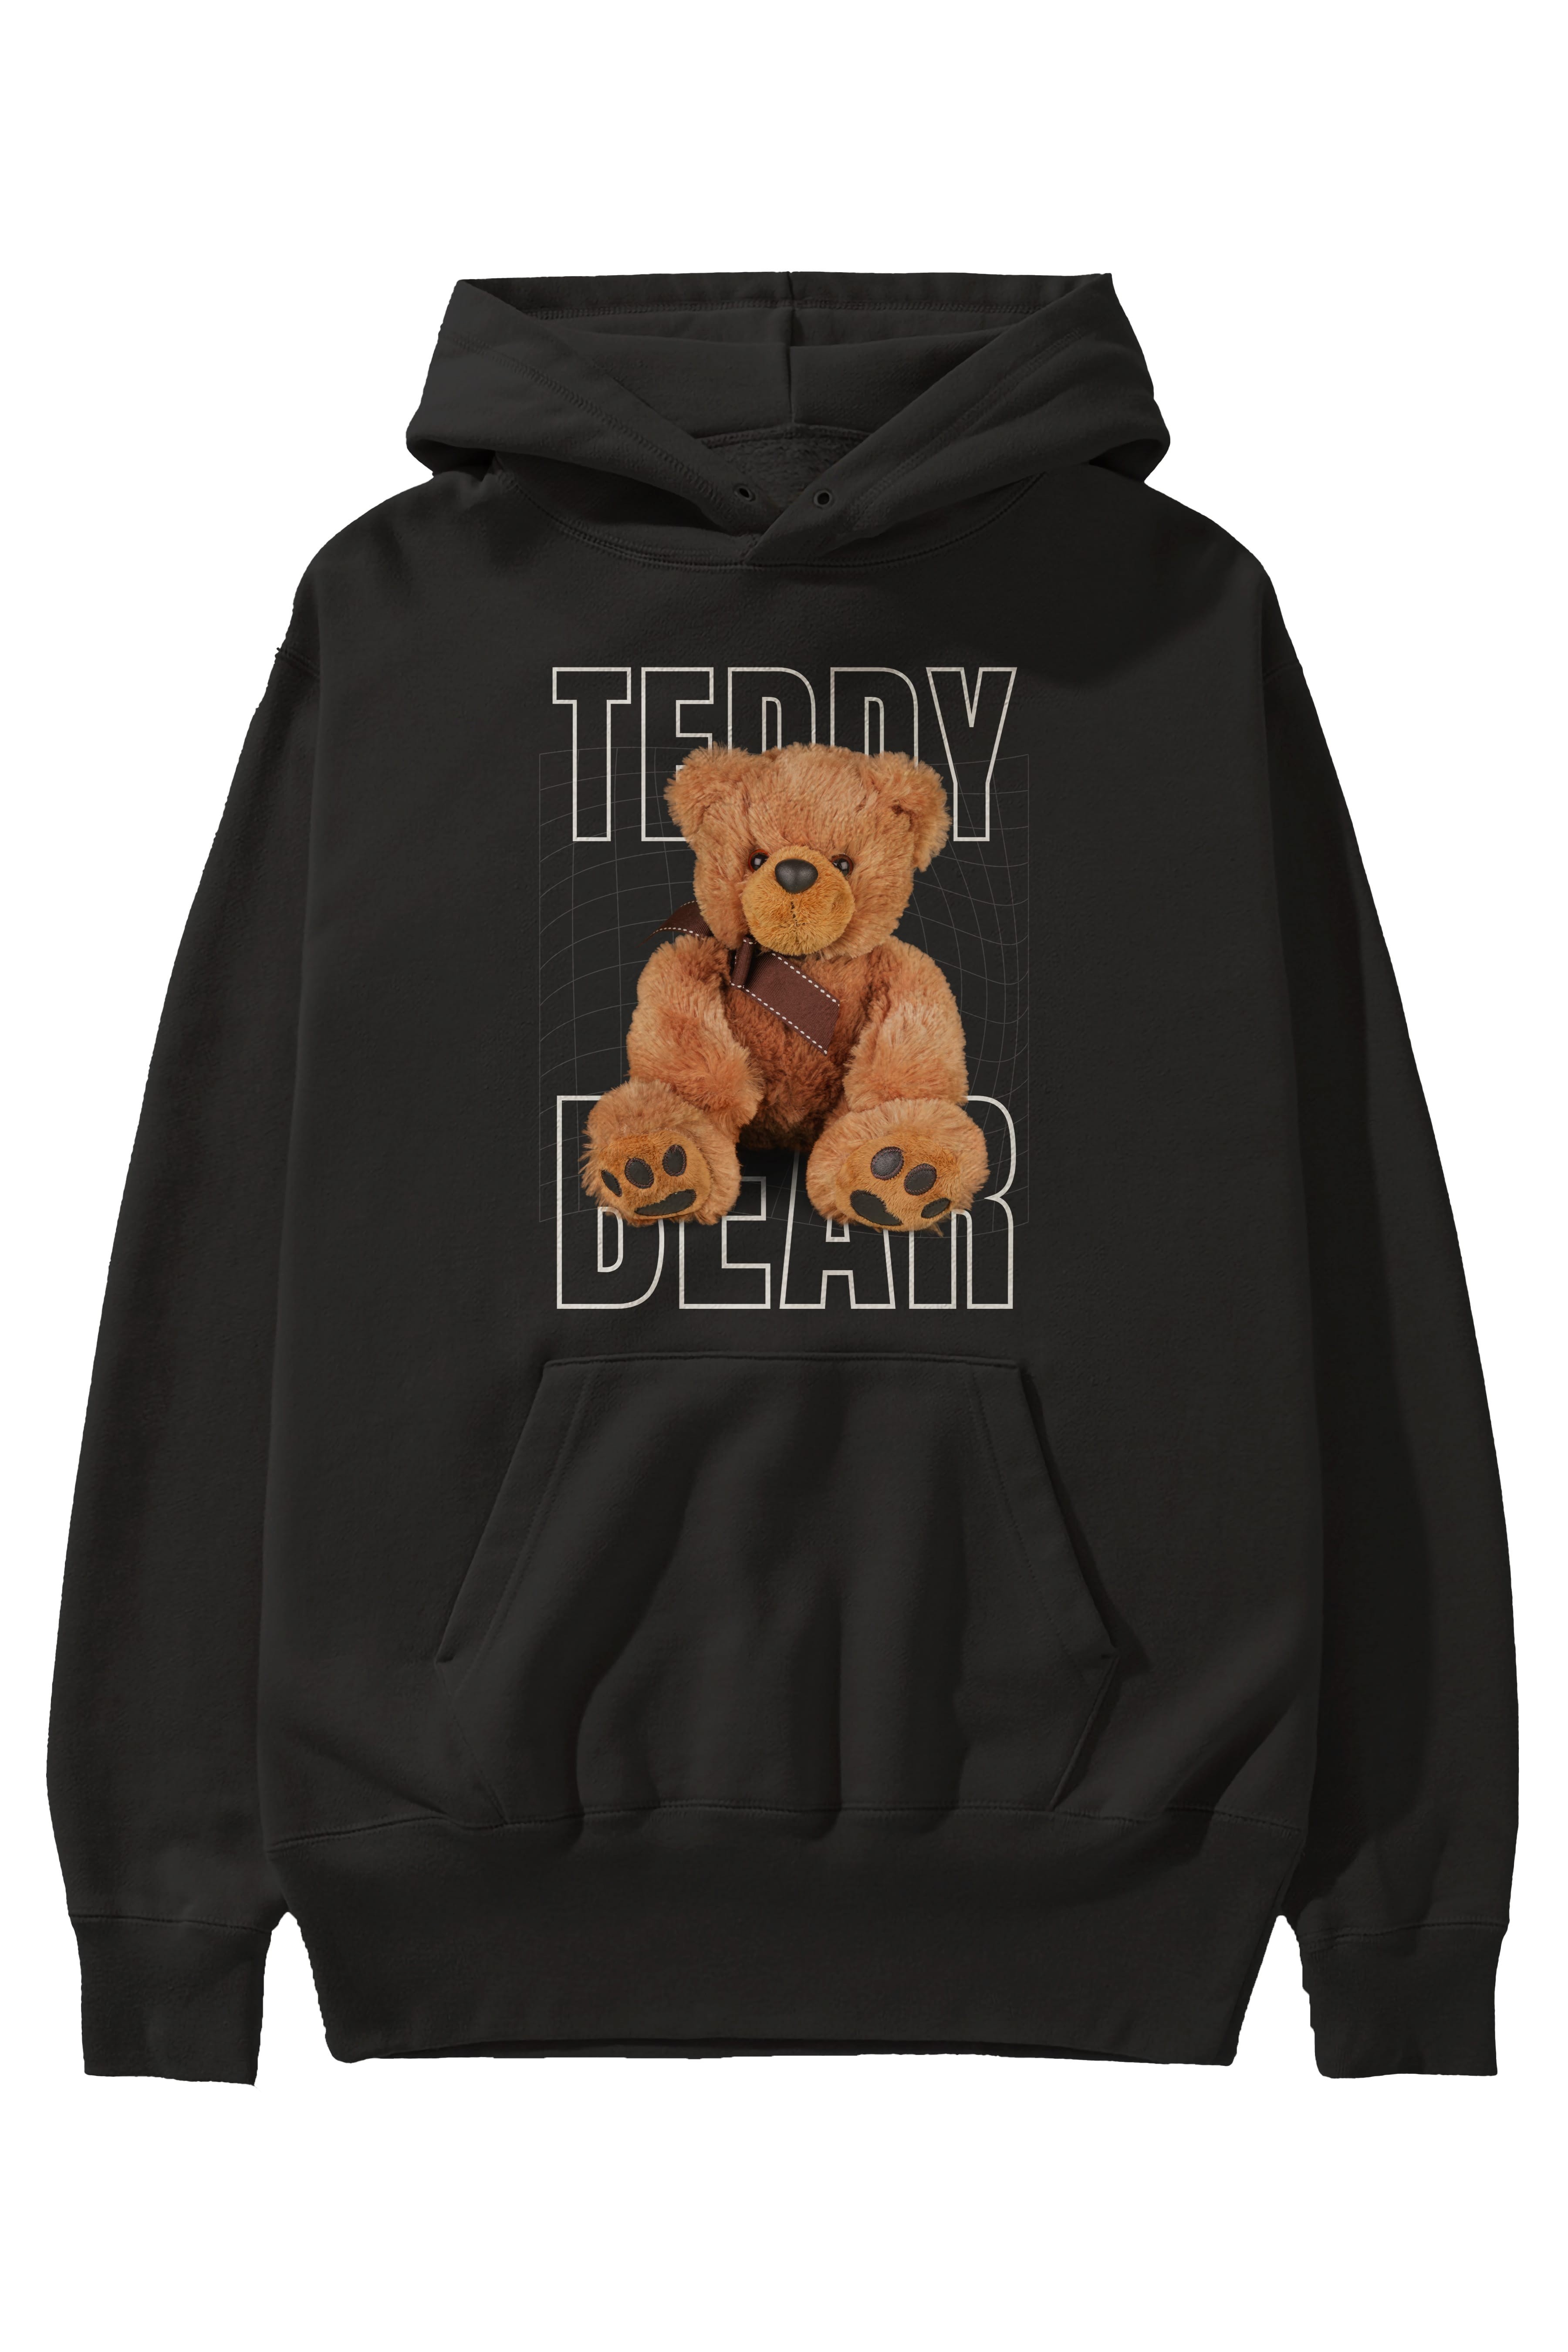 Teddy Bear Yazılı Ön Baskılı Hoodie Oversize Kapüşonlu Sweatshirt Erkek Kadın Unisex